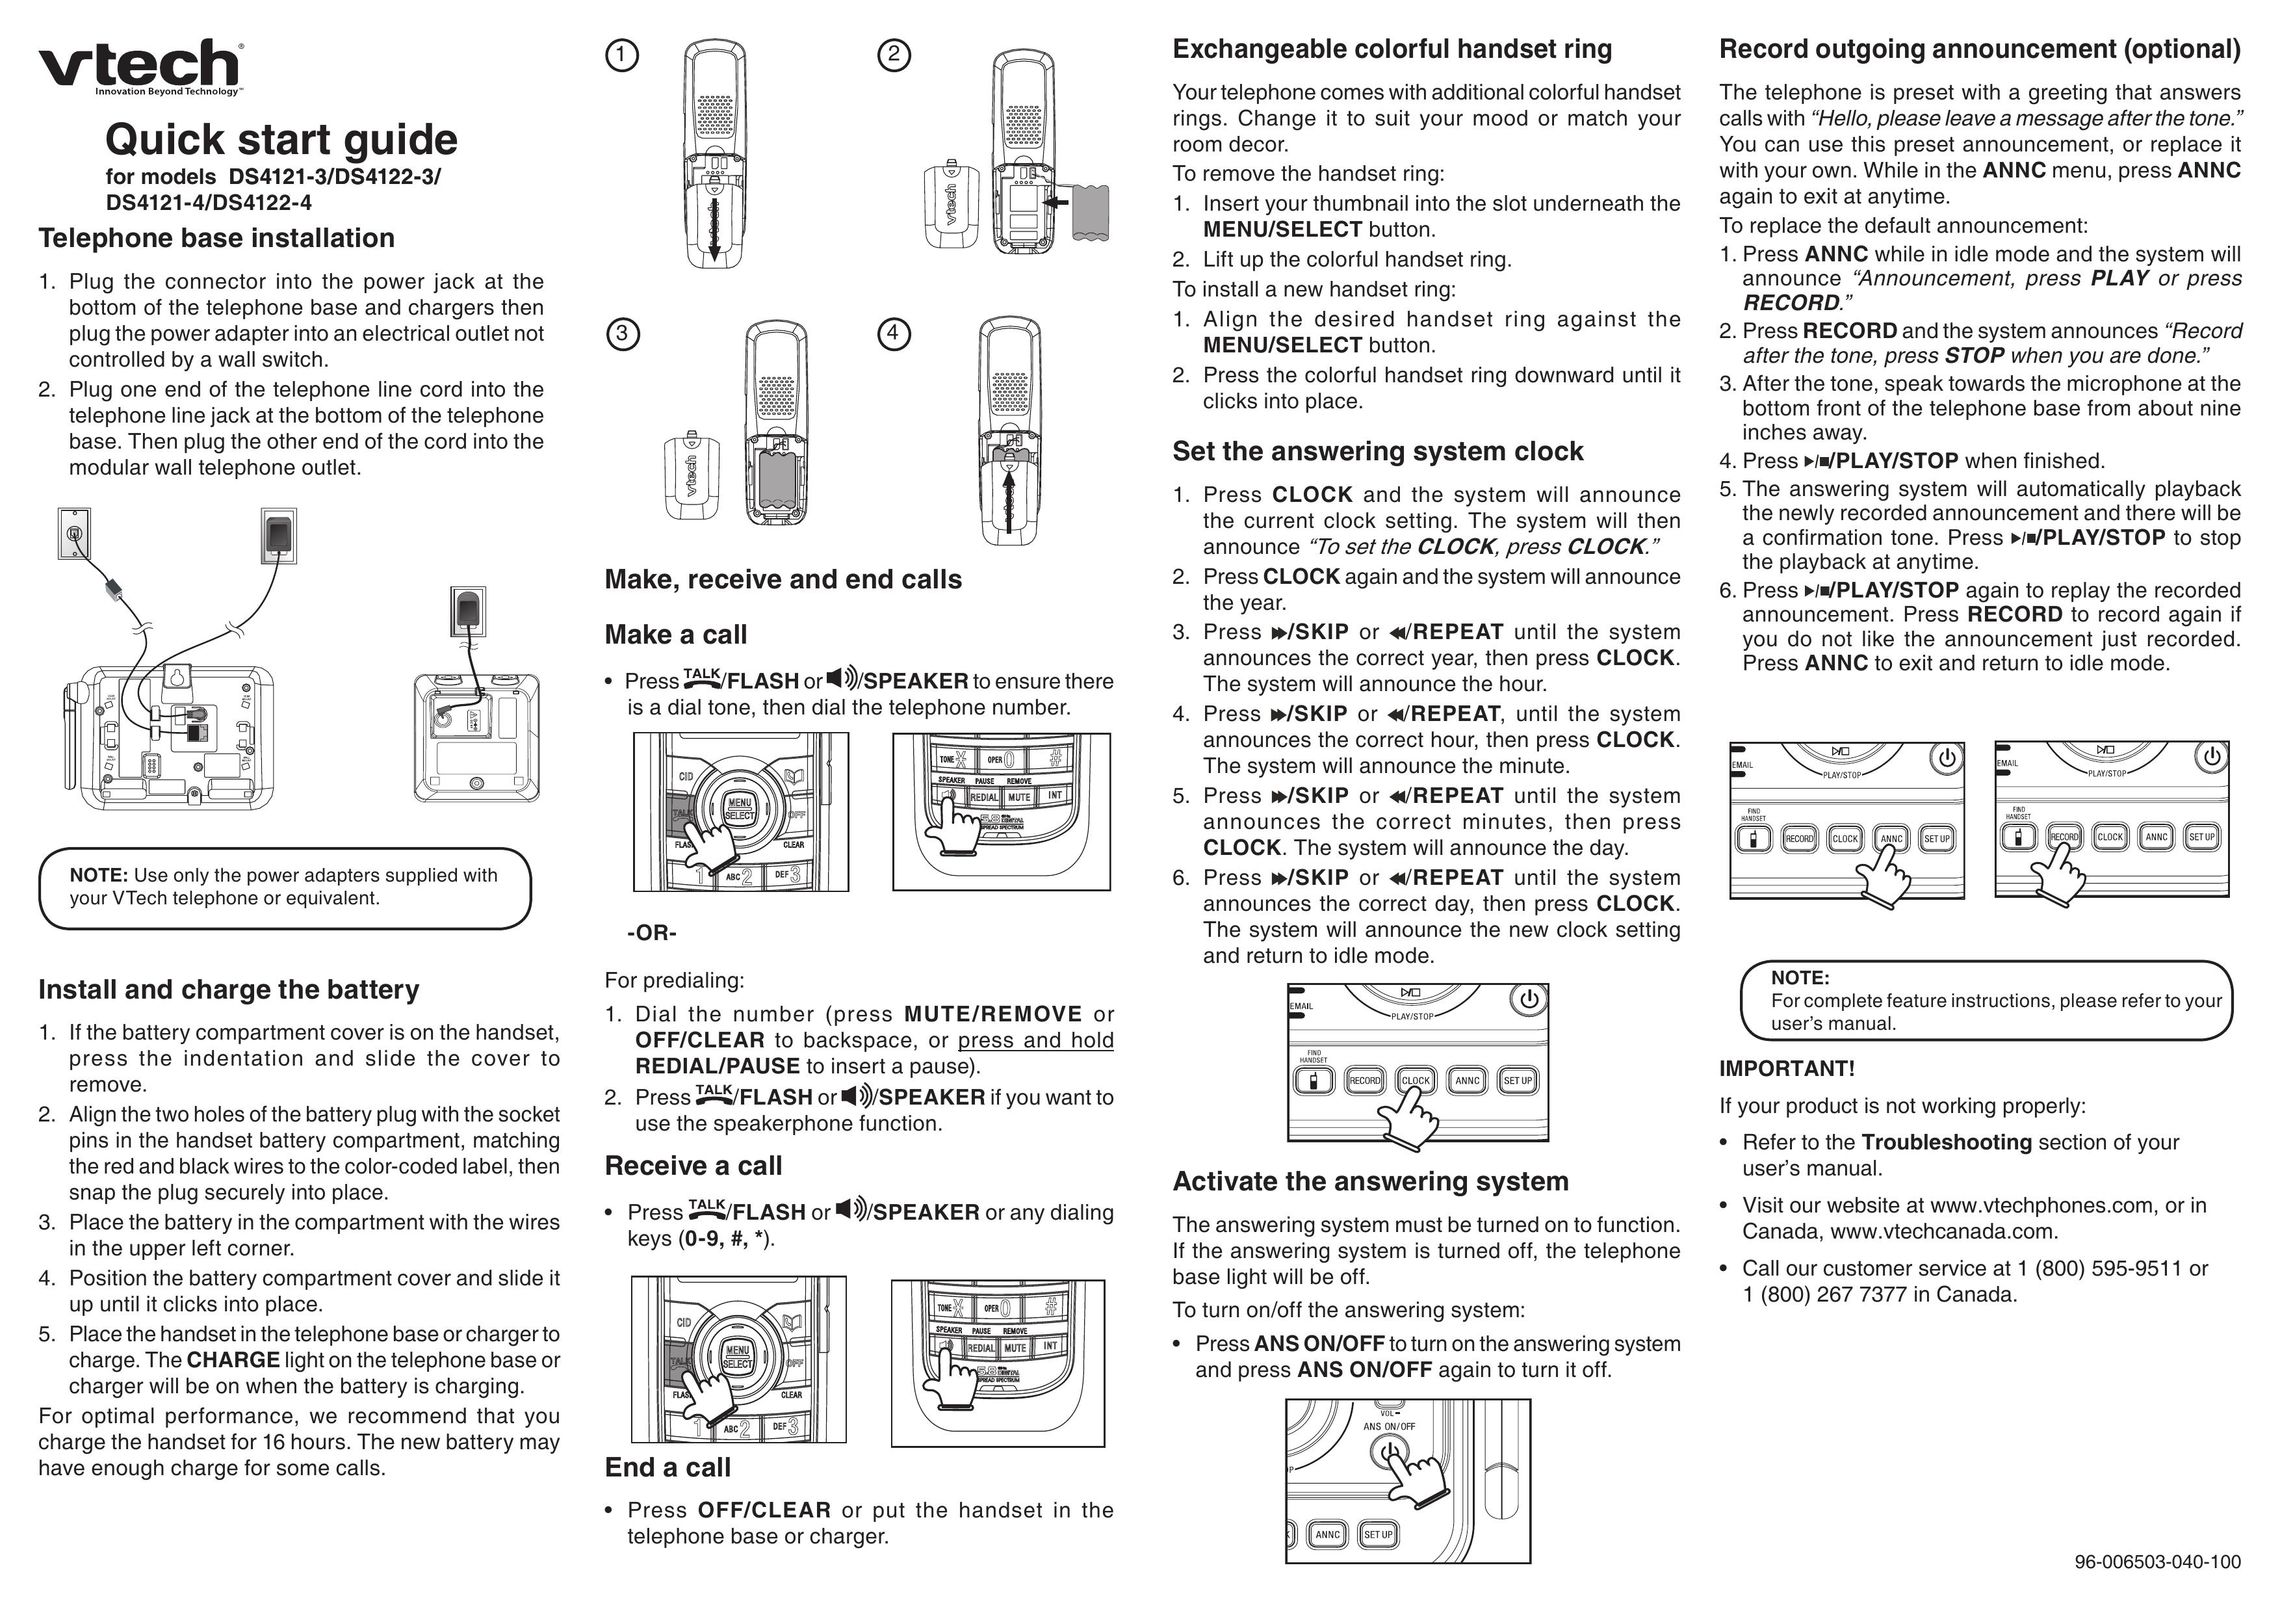 VTech DS4122-3 Telephone User Manual